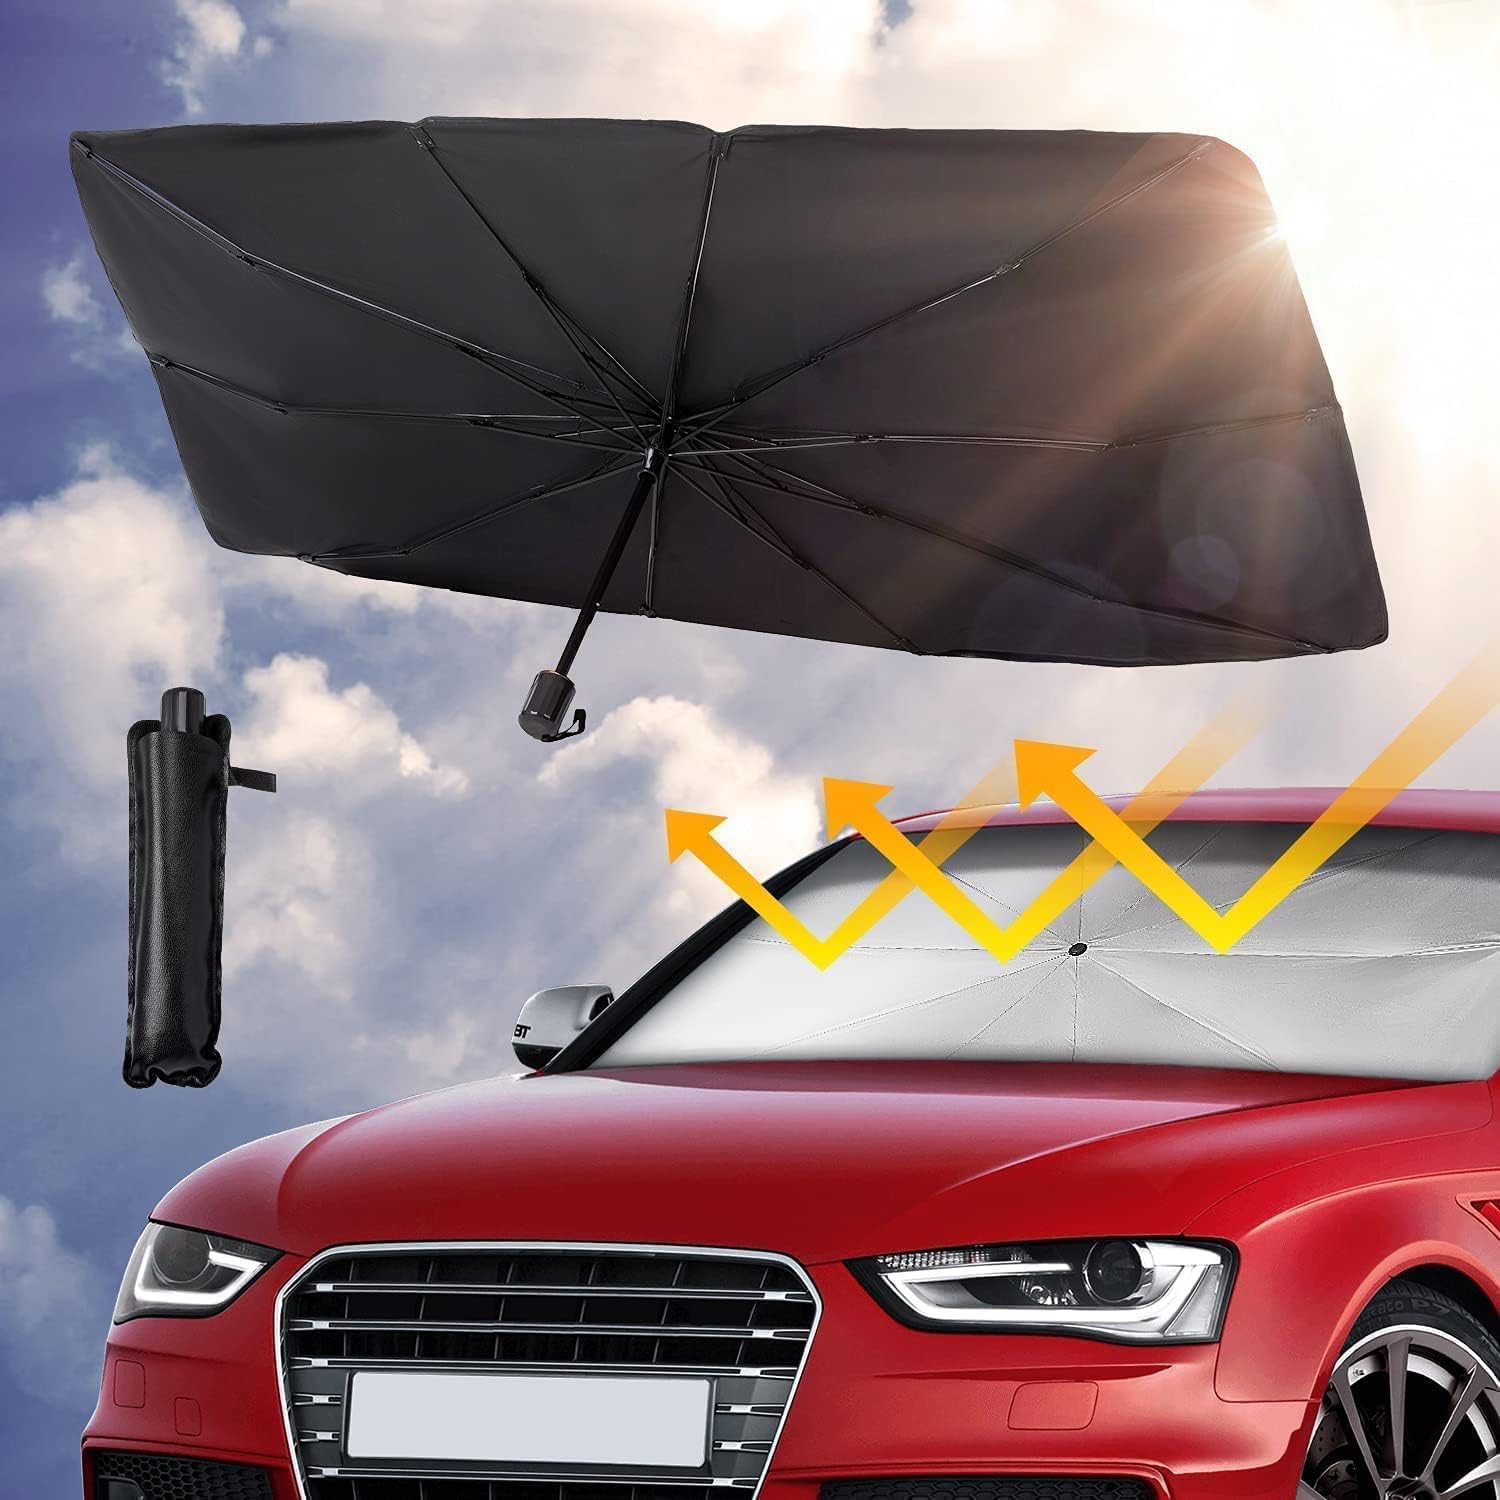 Sonnenschutz Auto Frontscheibe für VW Polo V 2009-2014, Windschutzscheibe Sonnenschutz,Sonnenschutz Frontscheibe Innen,Sonnenschirm Auto,Wärmeisolierter von vvvyfx